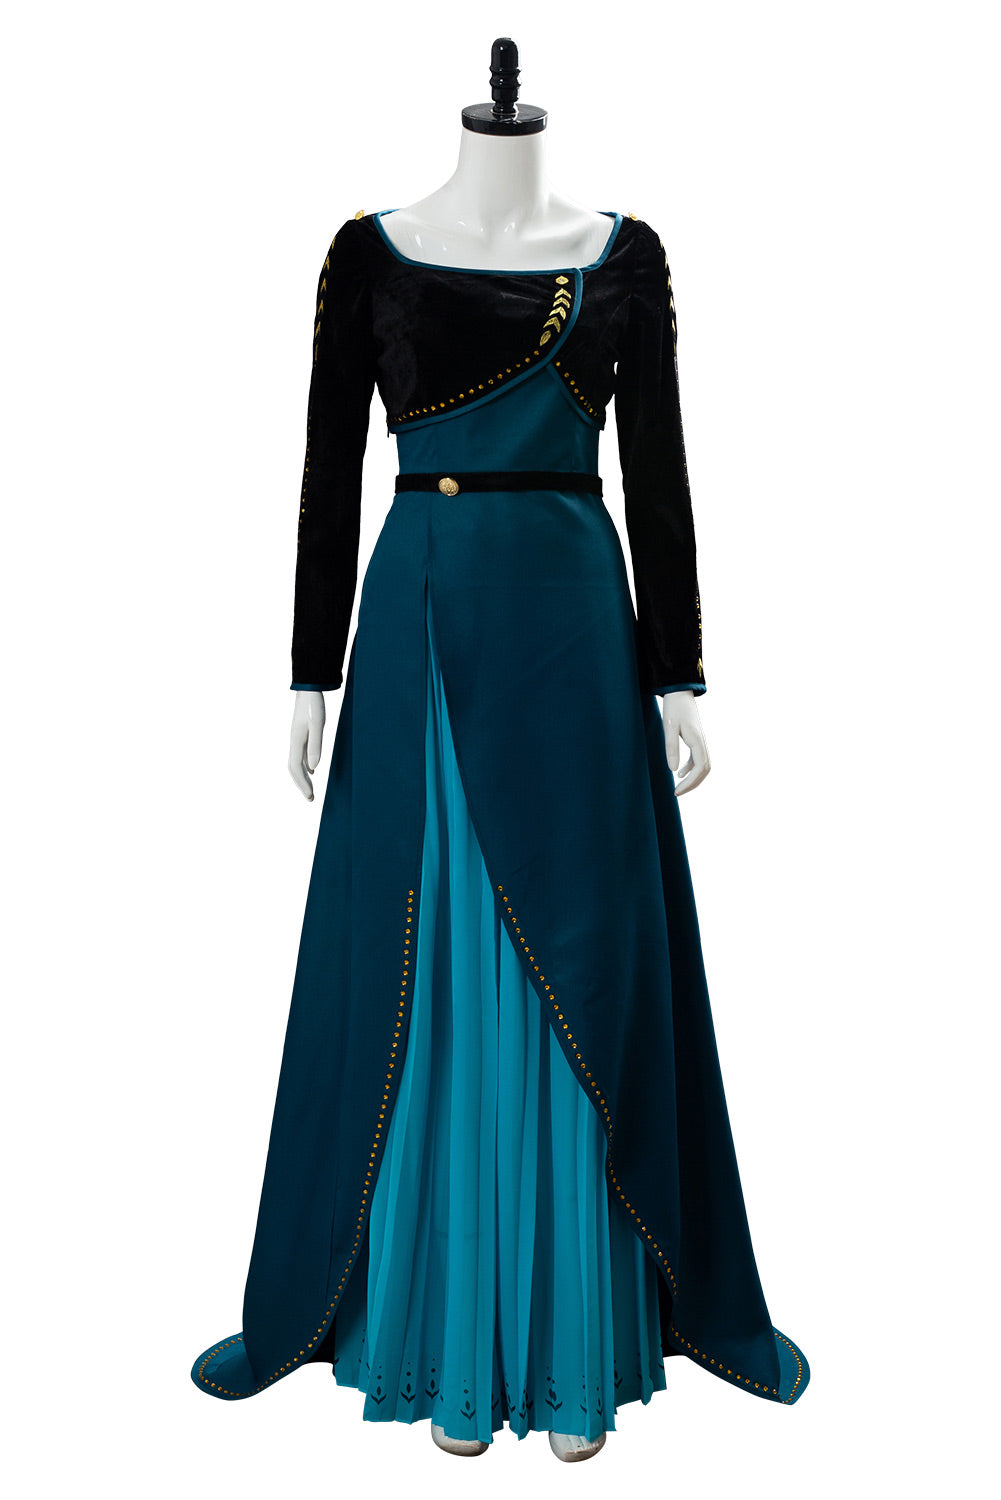 Die Einkönigin Anna Königin Anna Kleid Cosplay Kostüm Set